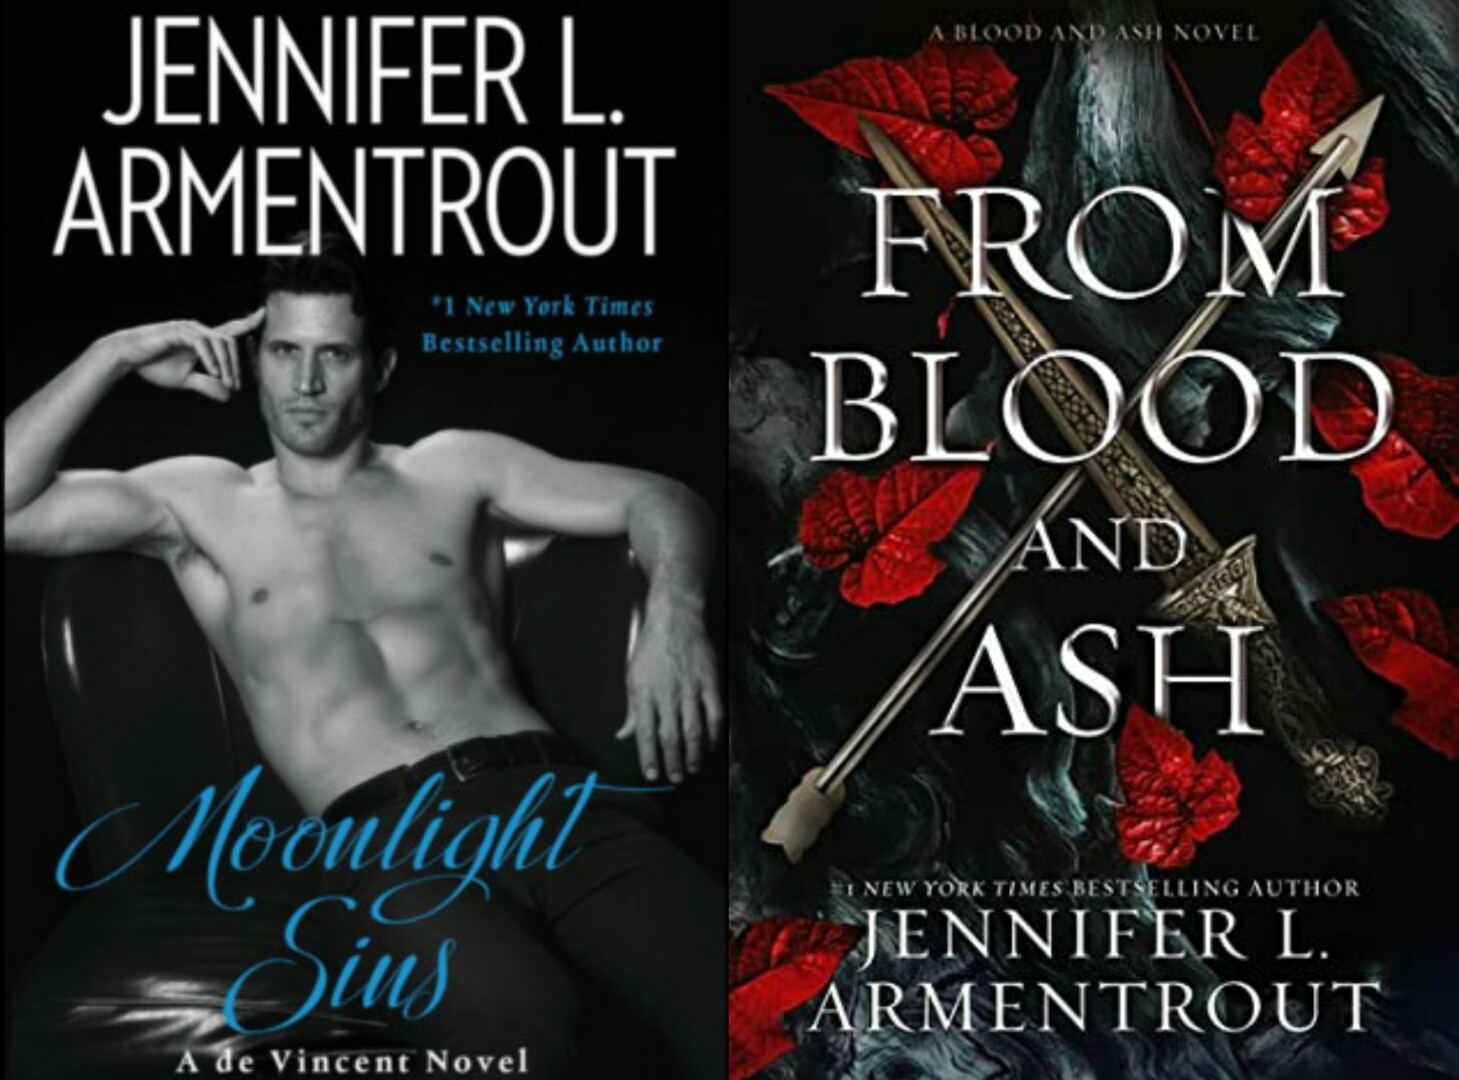 De Sangre y Cenizas, Jennifer Armentrout (NUEVO Y ORIGINAL) - Novelas